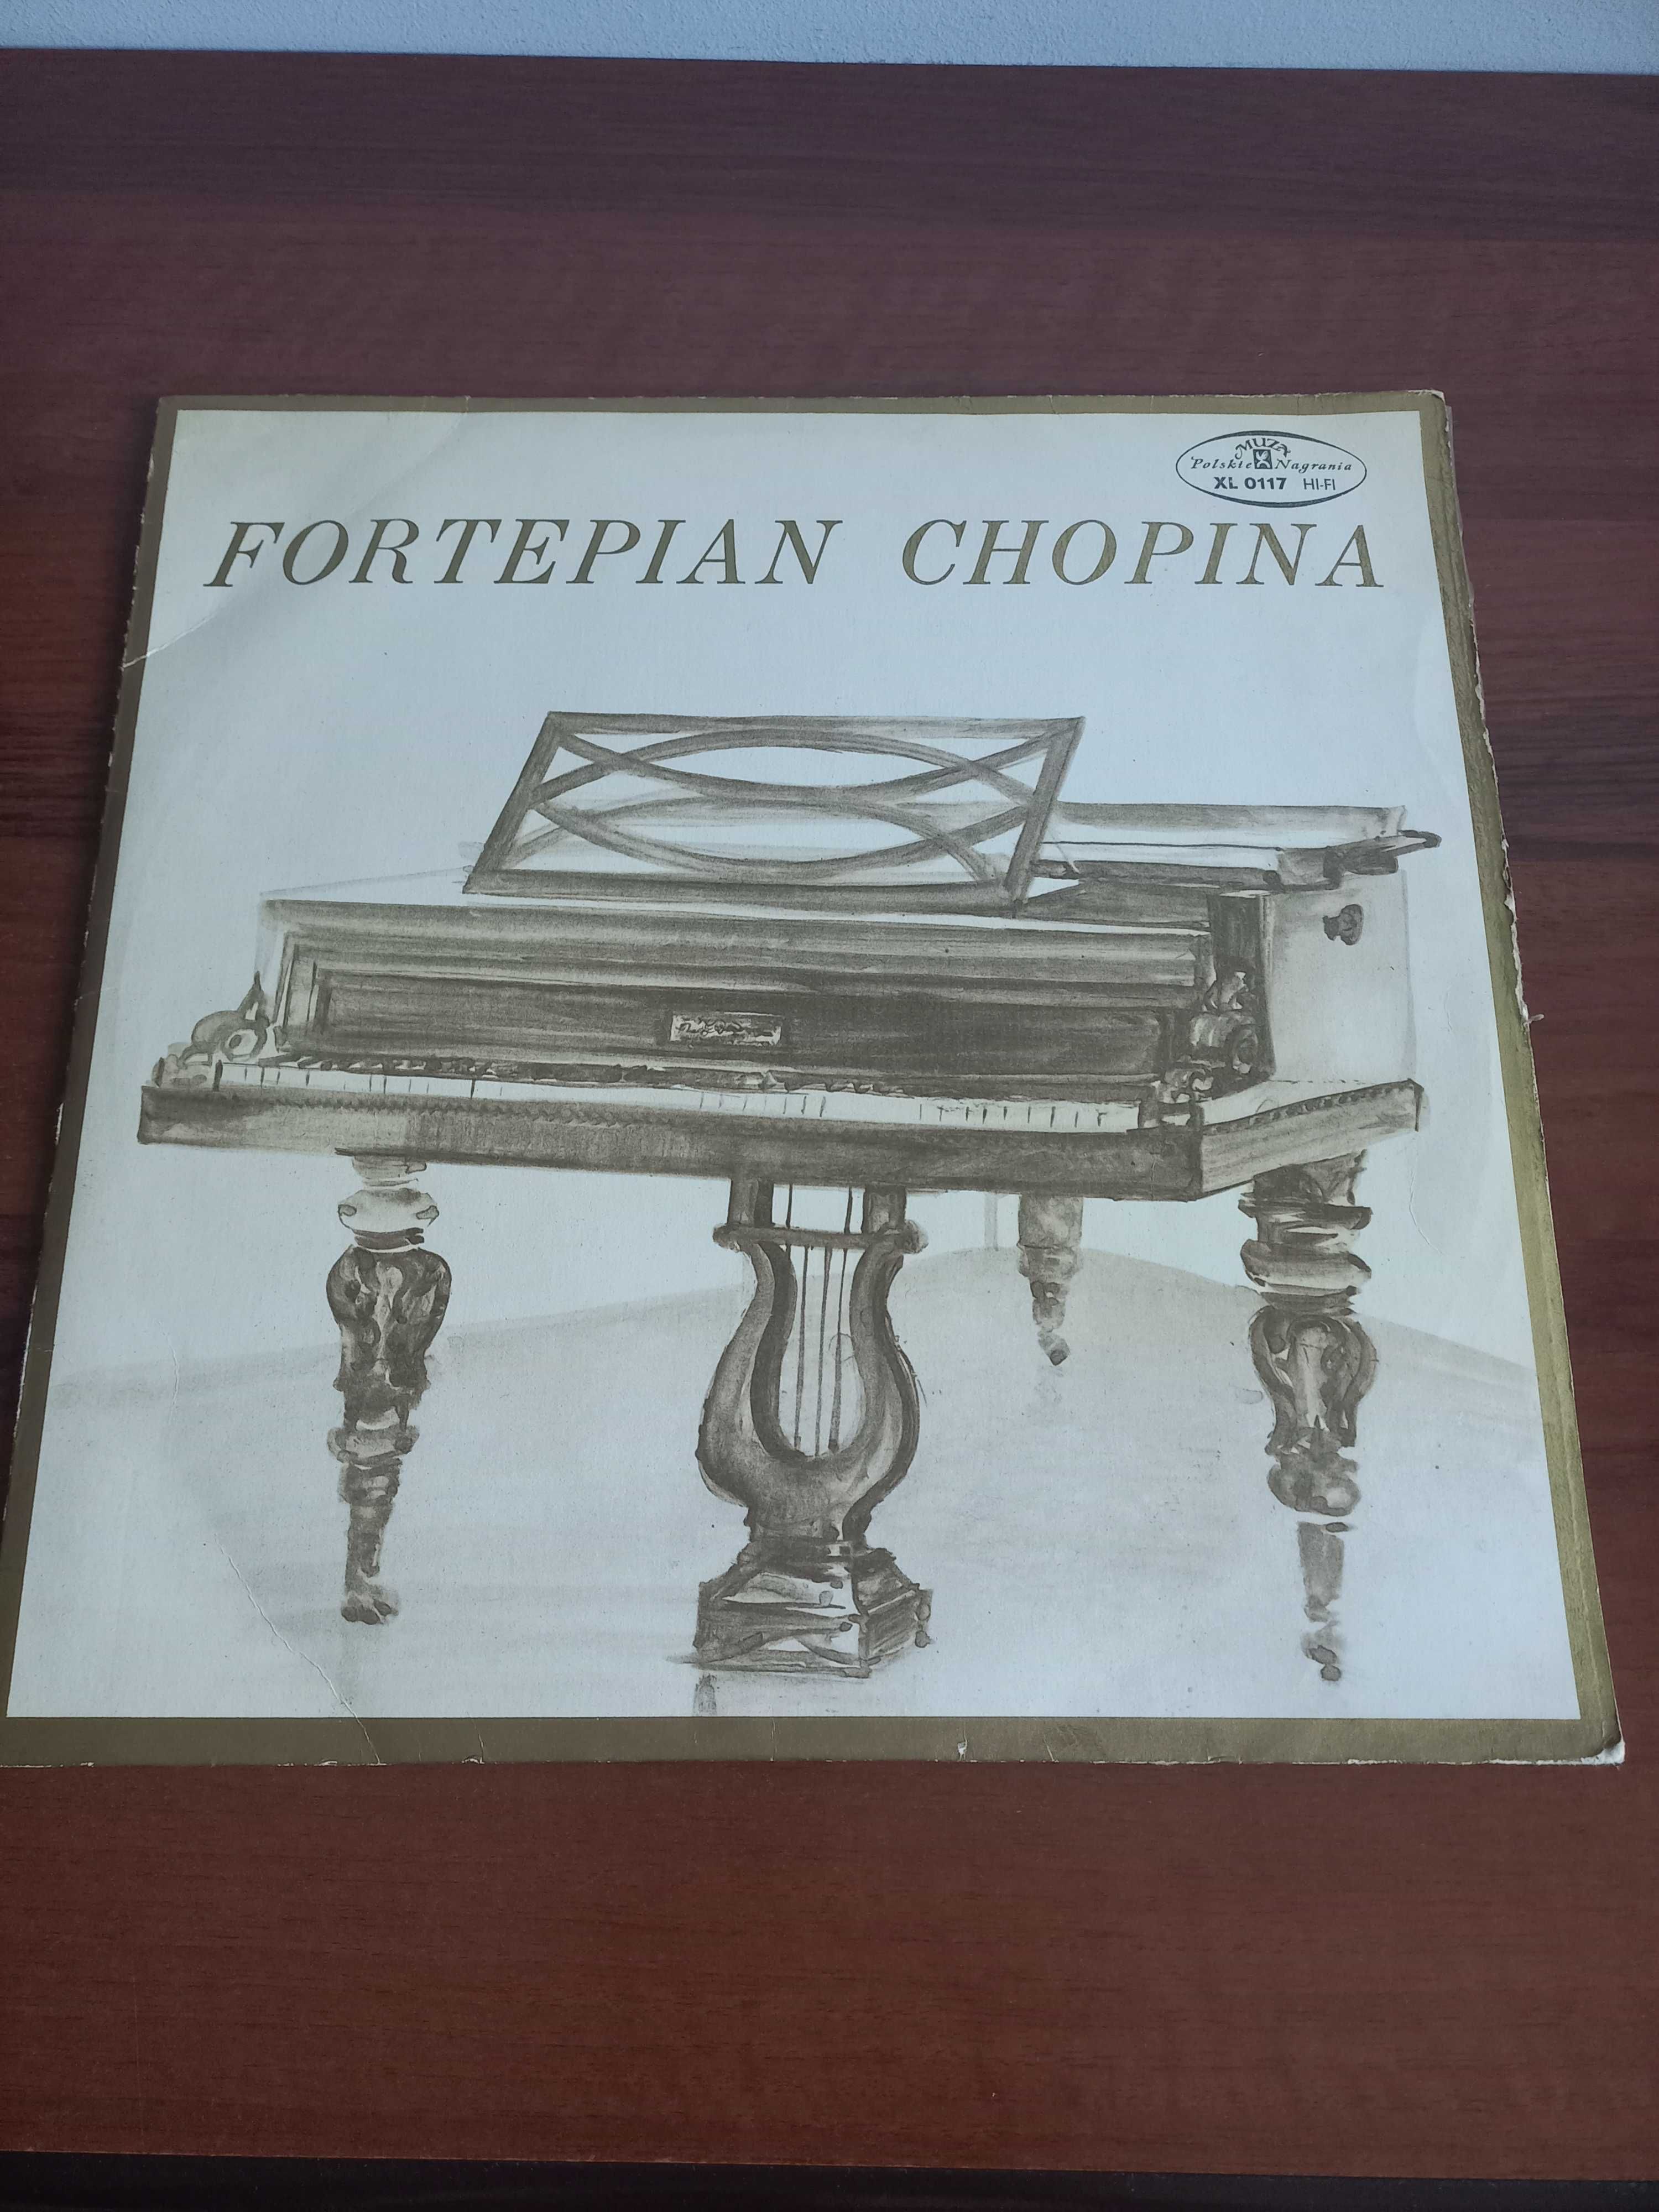 Płyta winylowa Fortepian Chopina. Zbigniew Drzewiecki